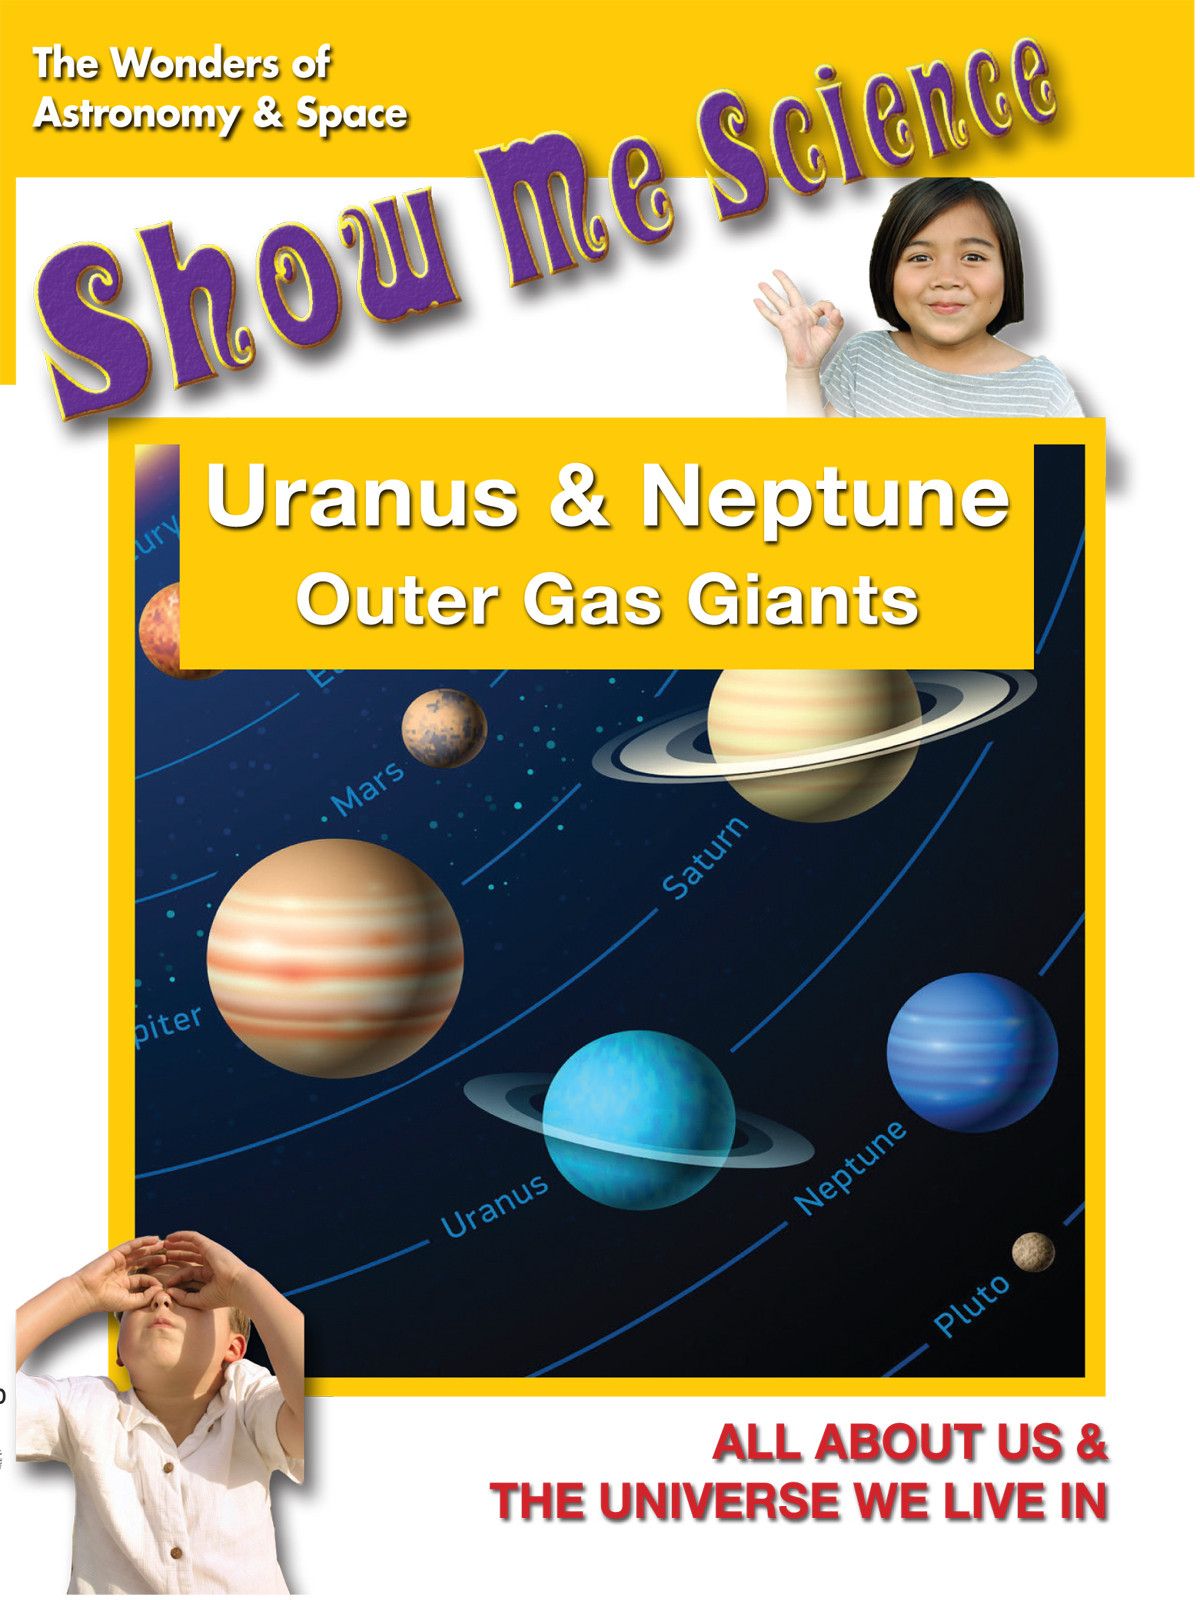 K4647 - Uranus & Neptune Outer Gas Giants